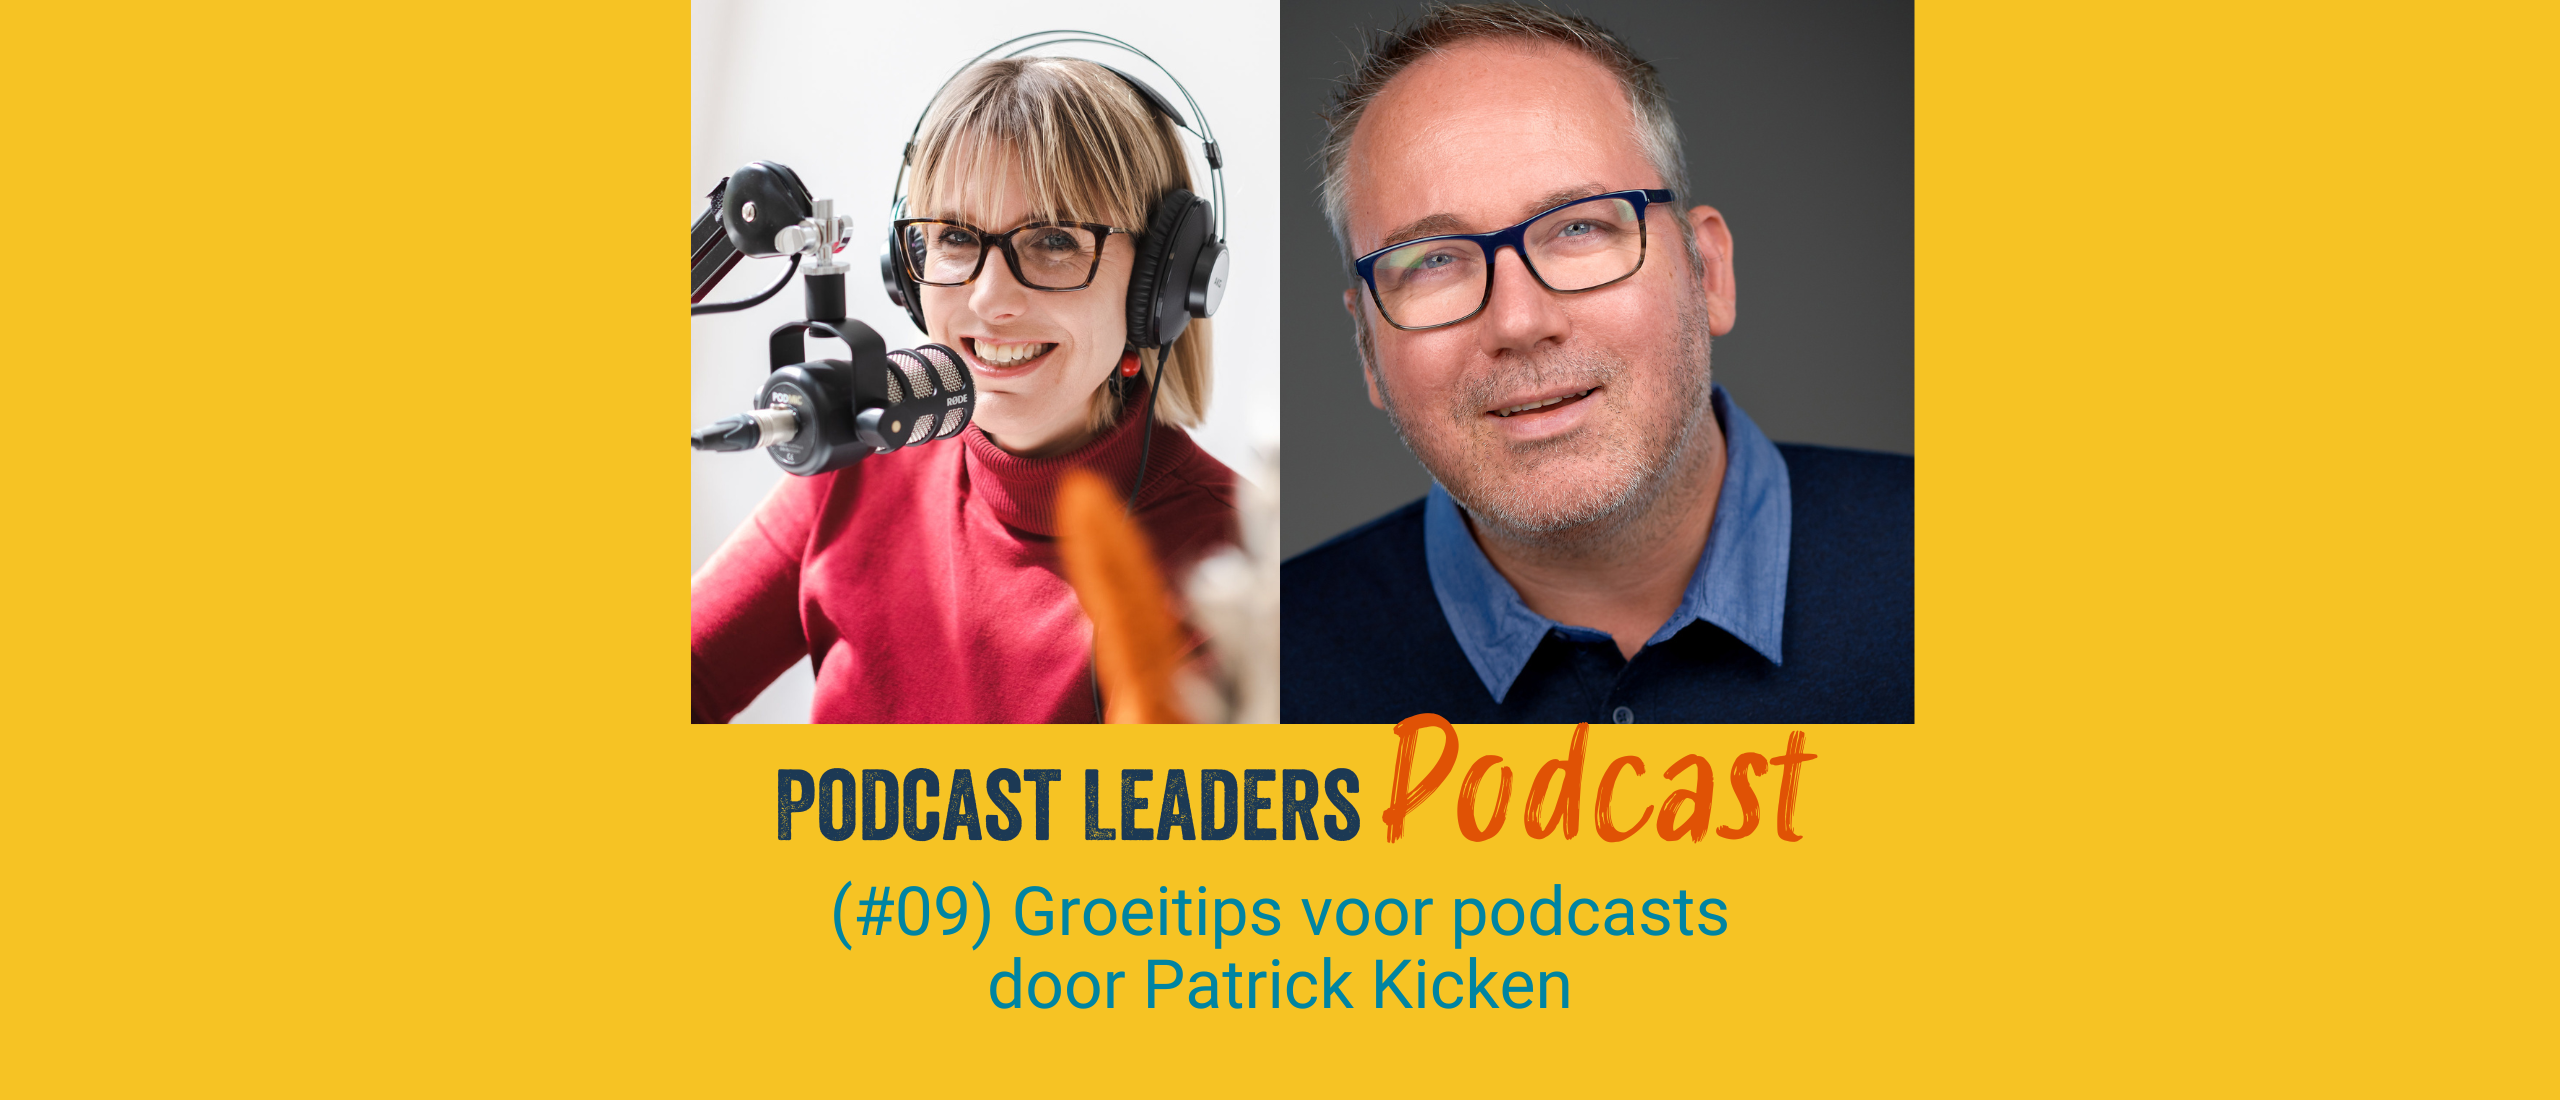 Groeitips voor podcasters van  Patrick Kicken